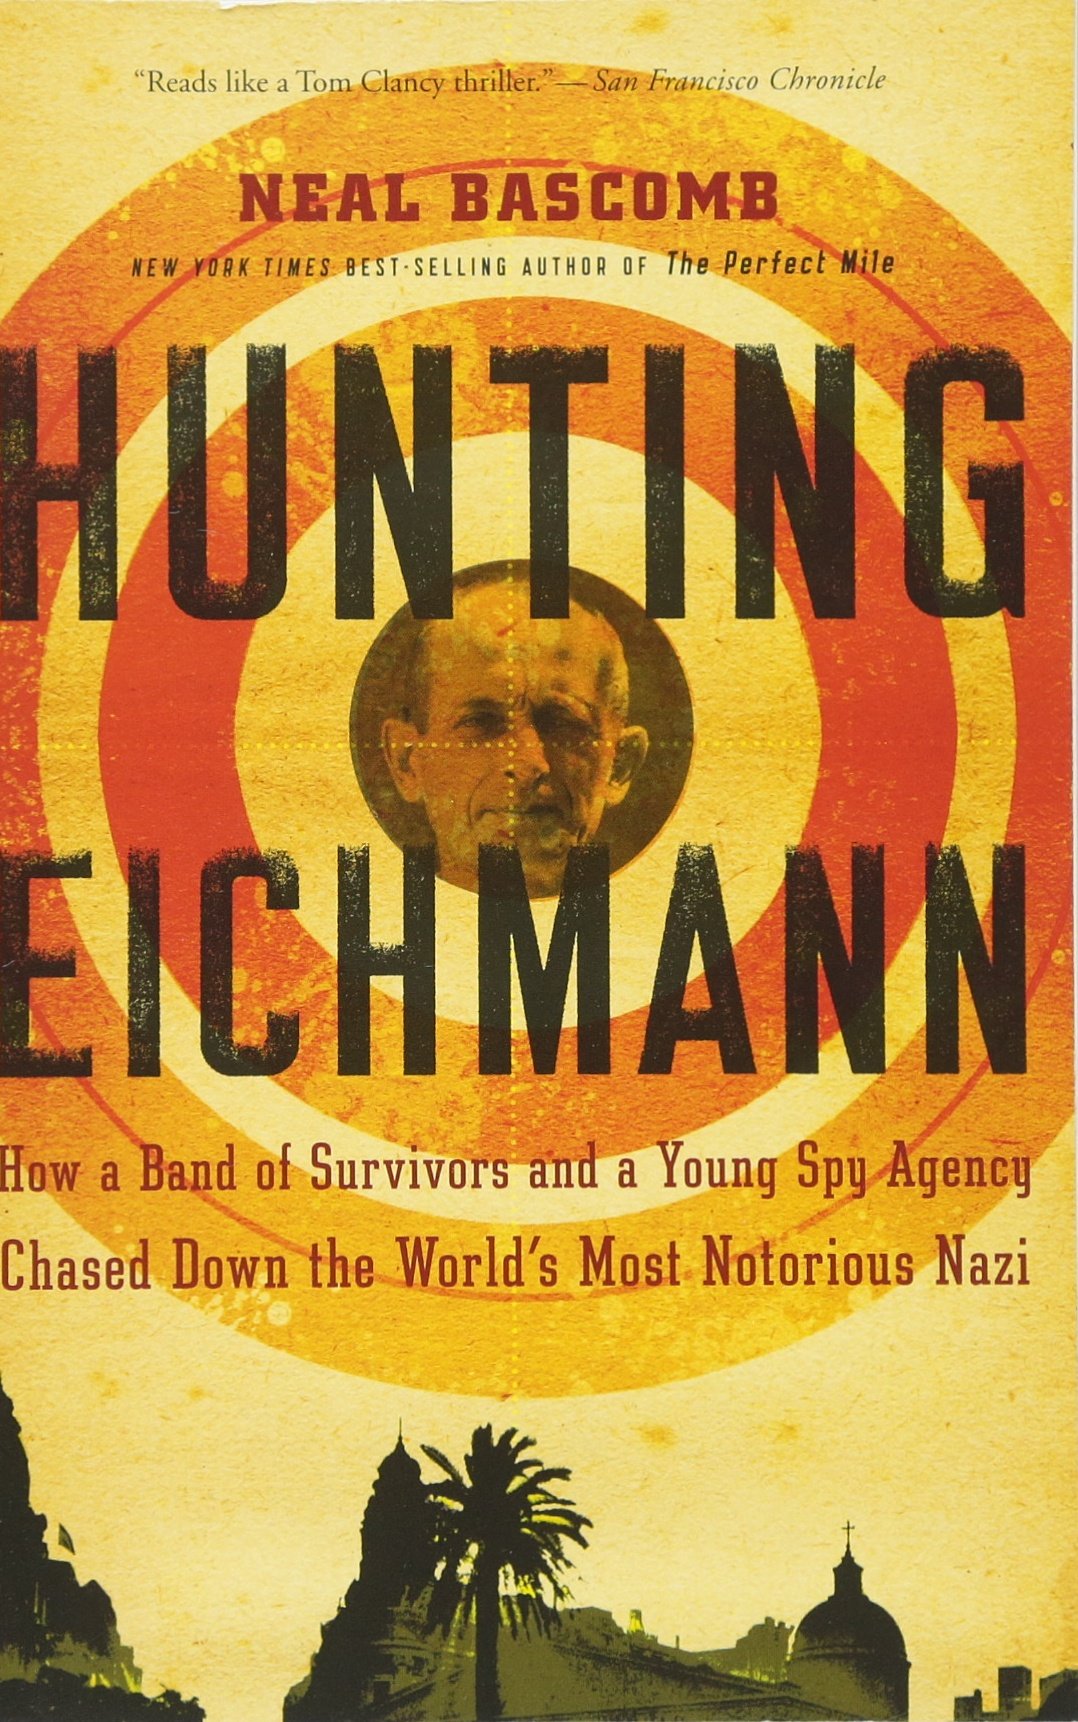 Hunting Eichmann